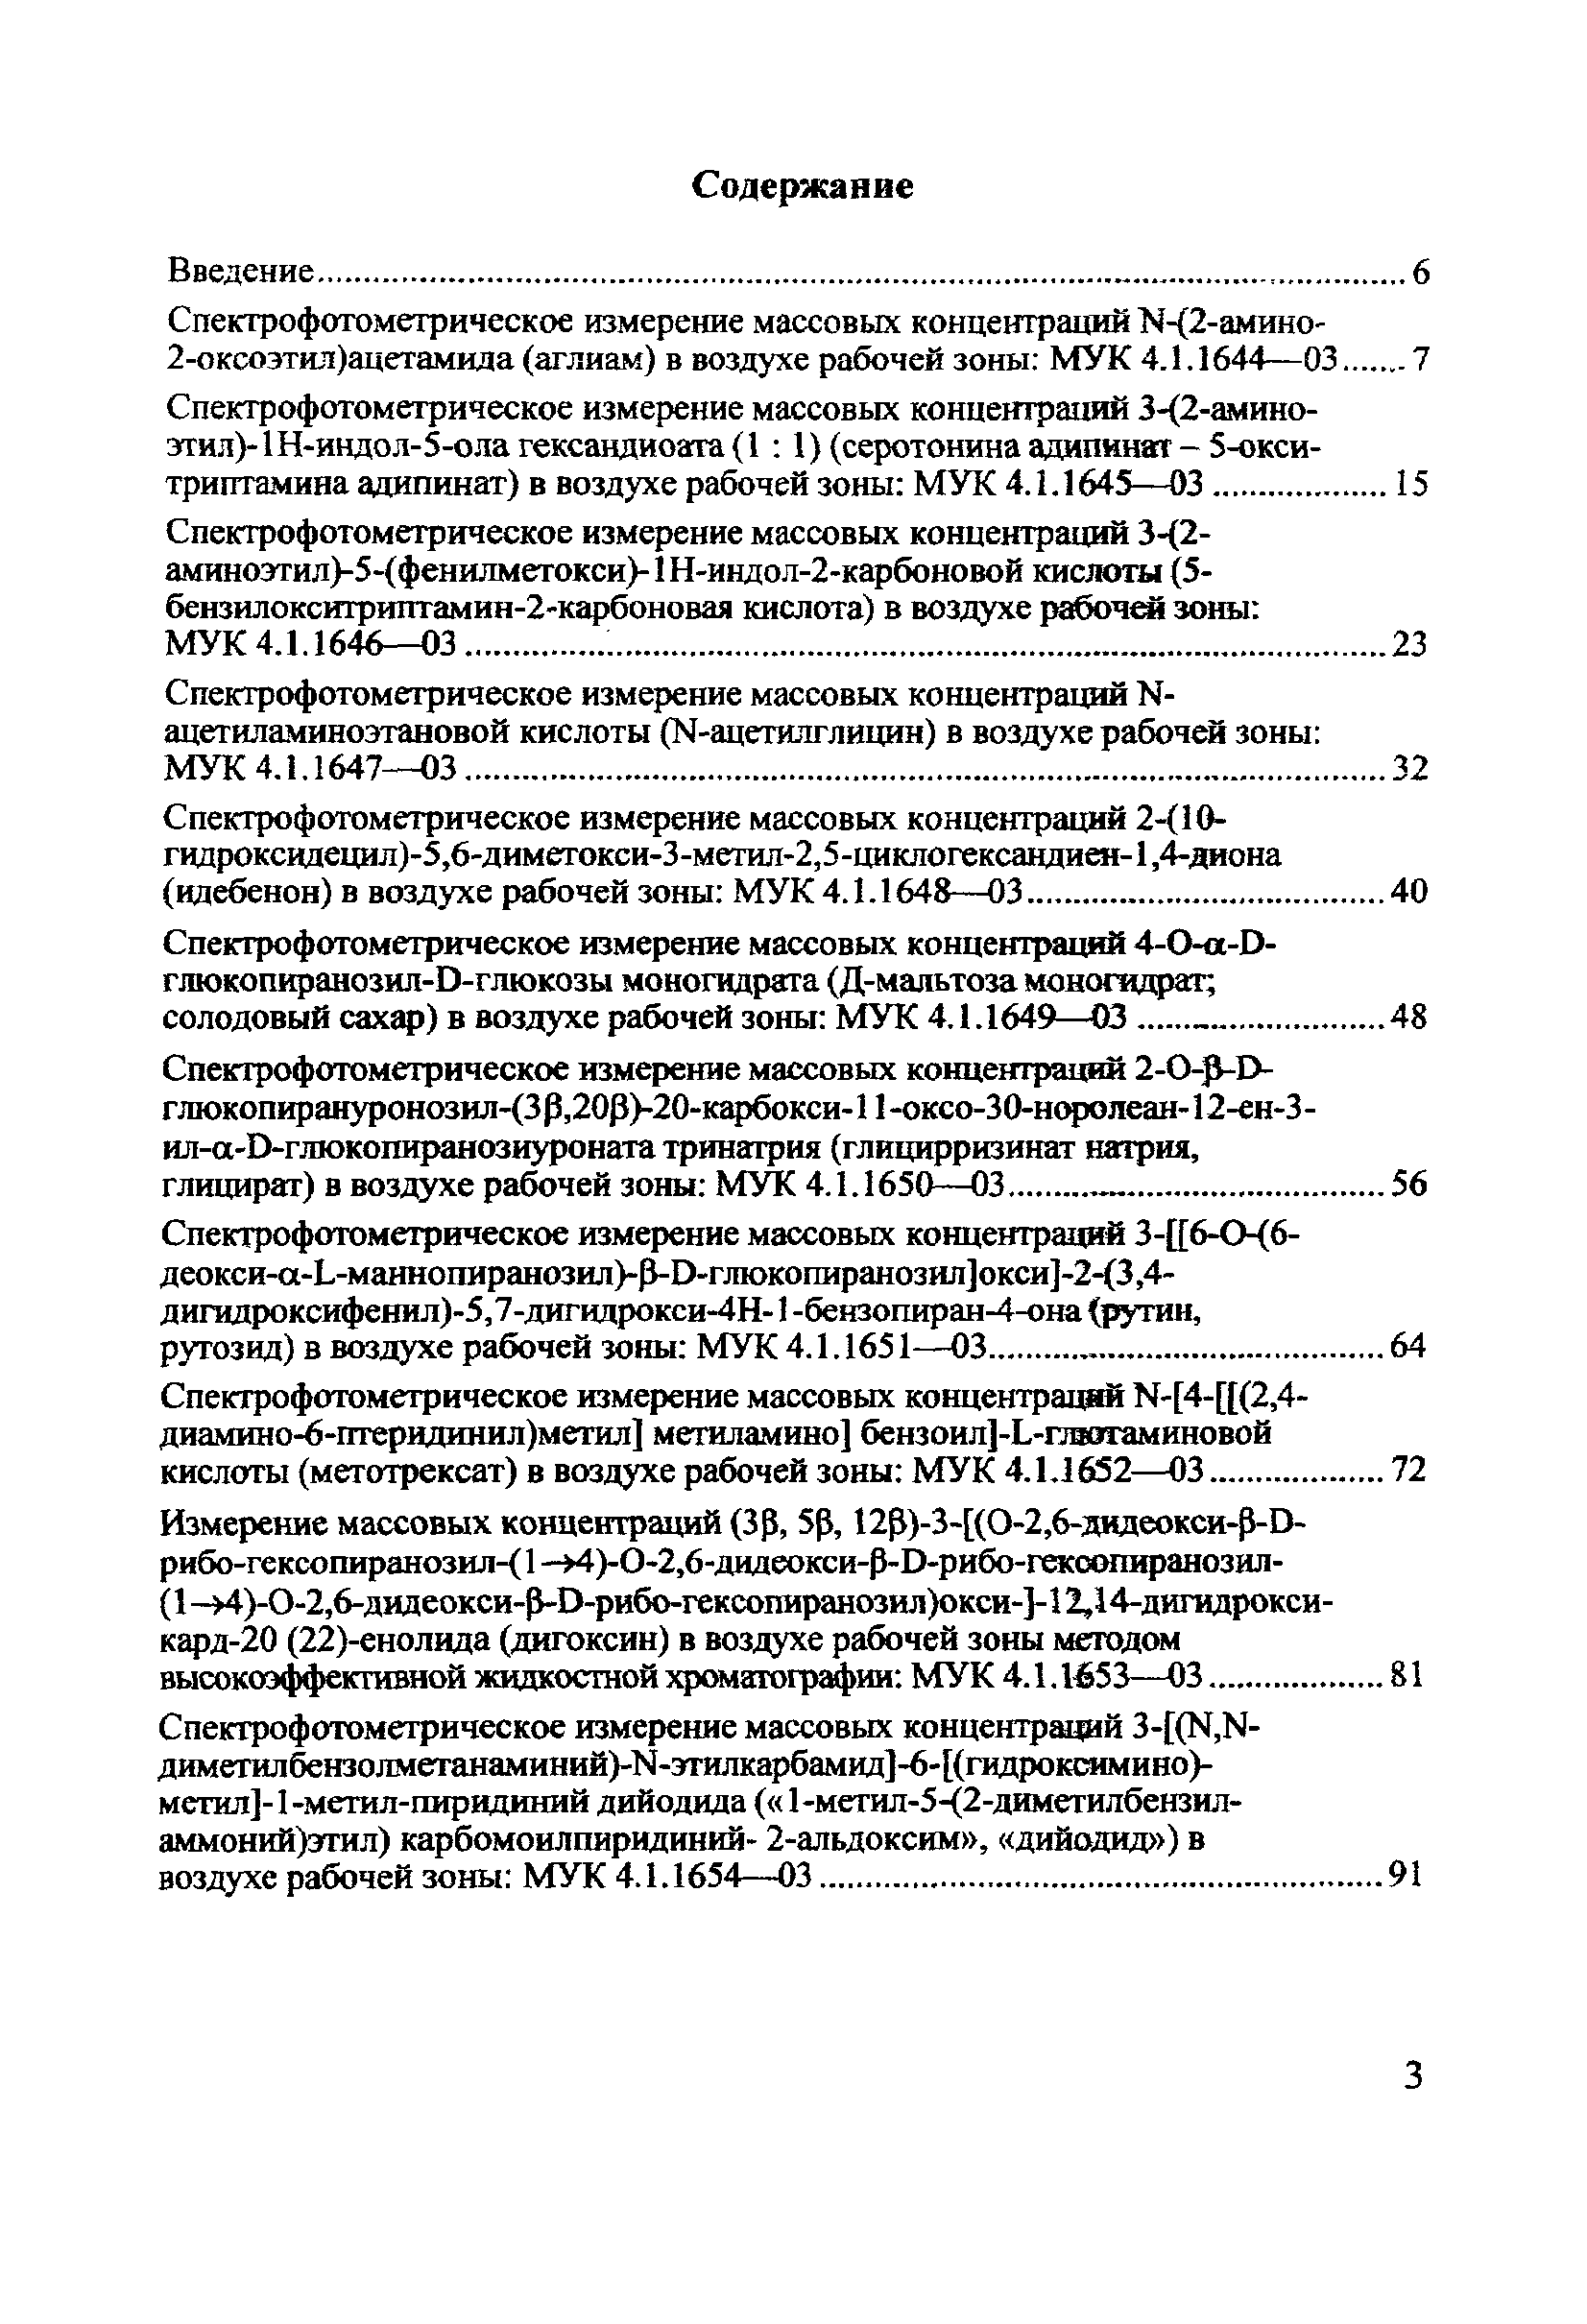 МУК 4.1.1645-03